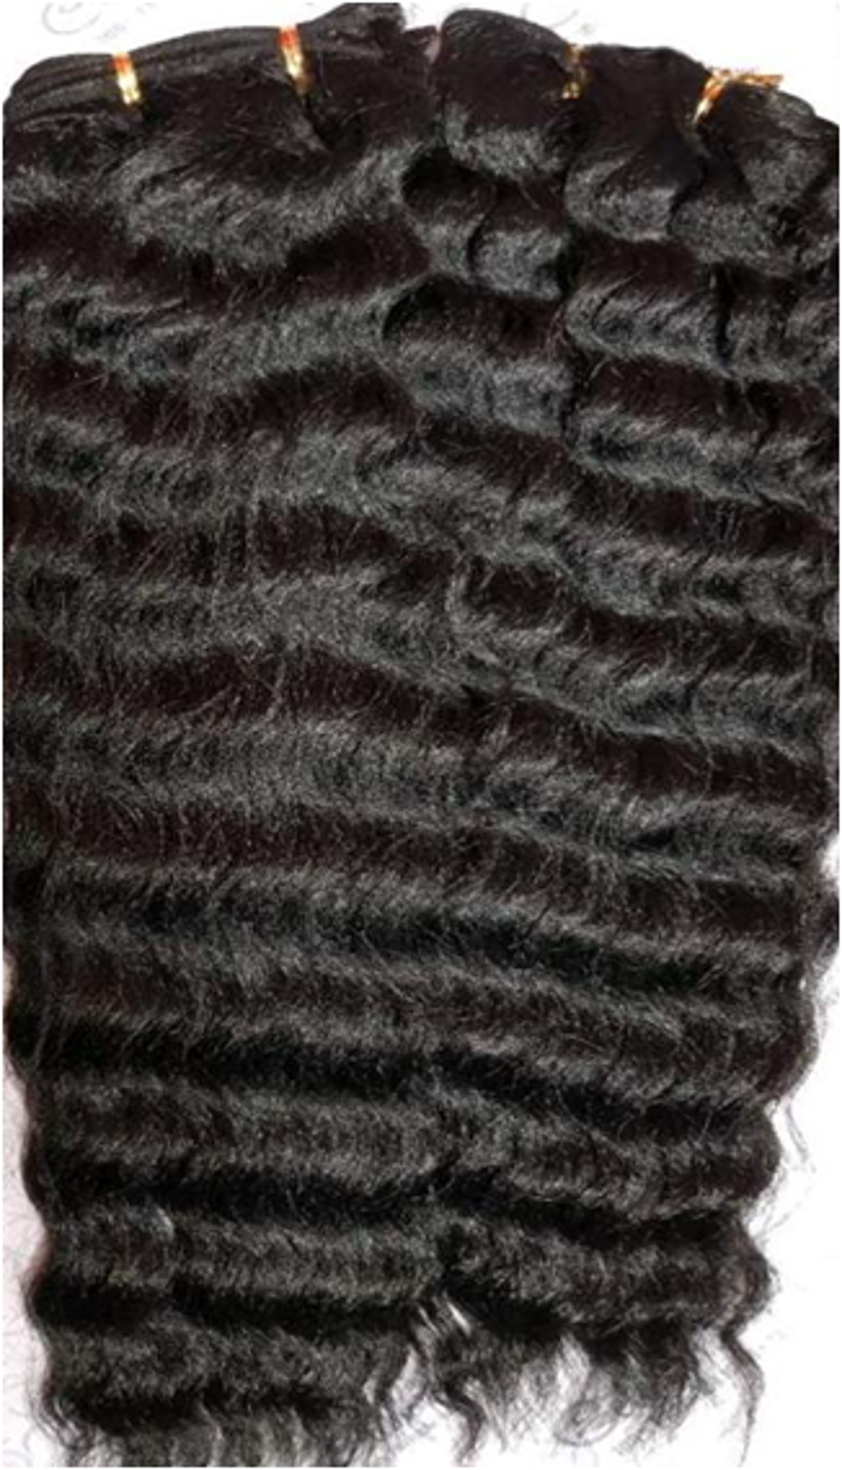 Zoya weave - 18", 200g, 2 bundles, Mid curly waves